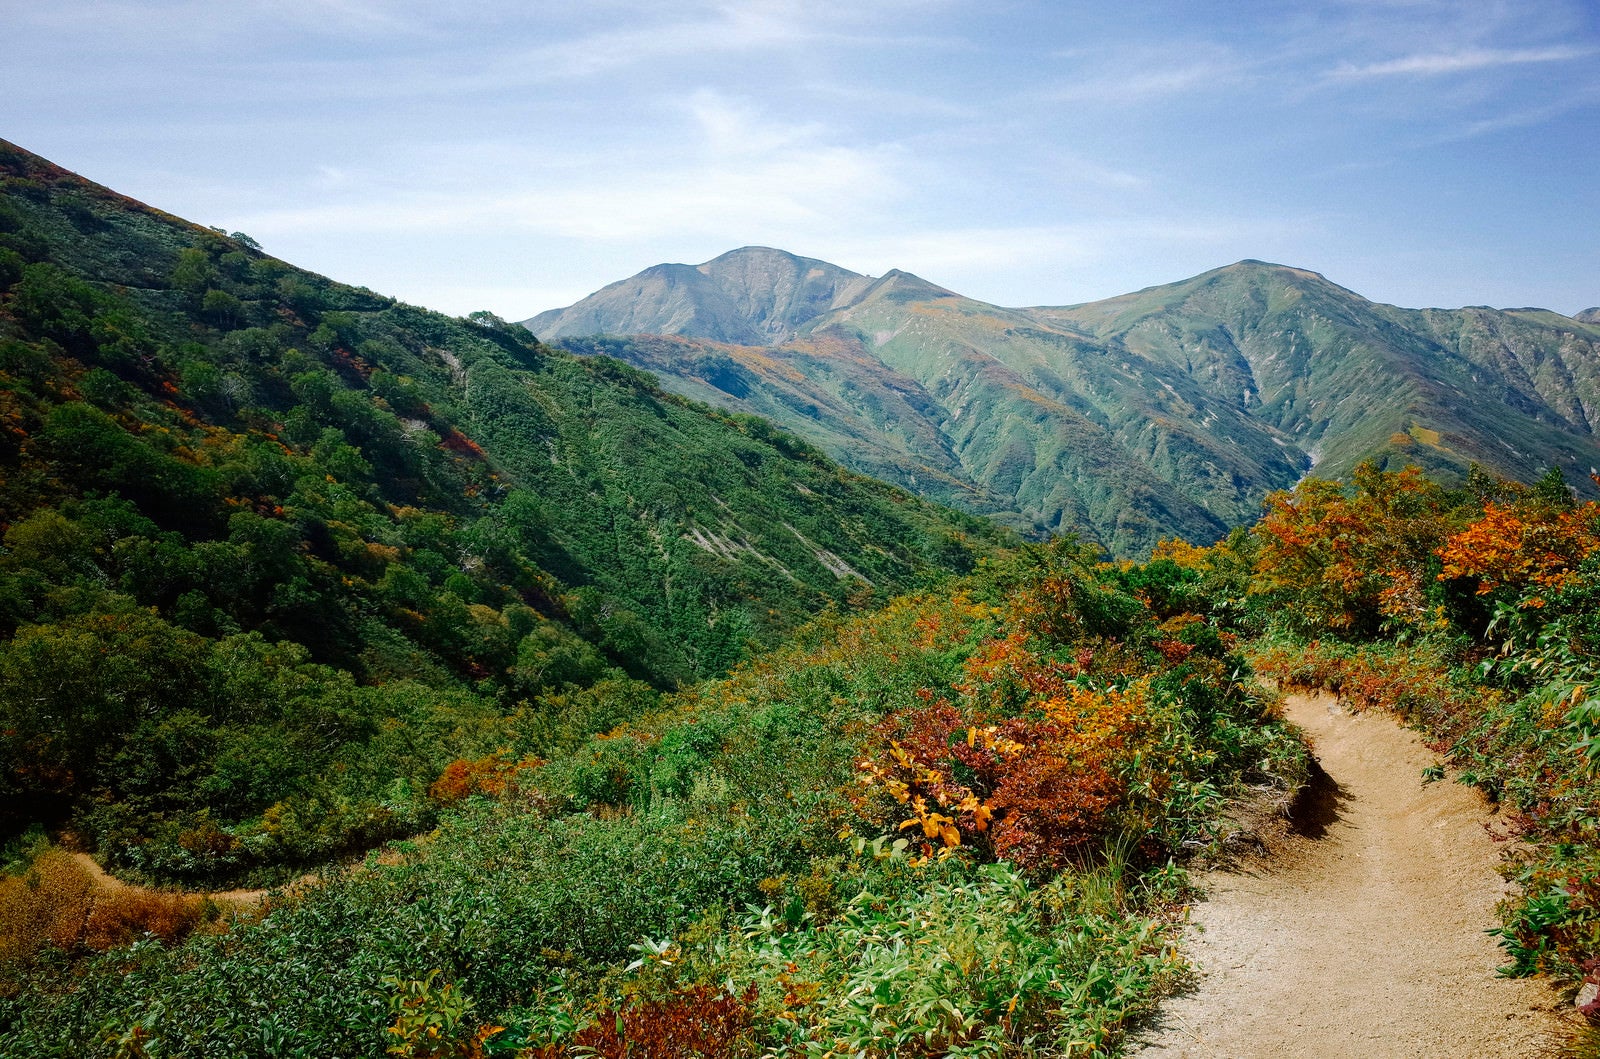 「開けた道の大朝日岳登山道」の写真